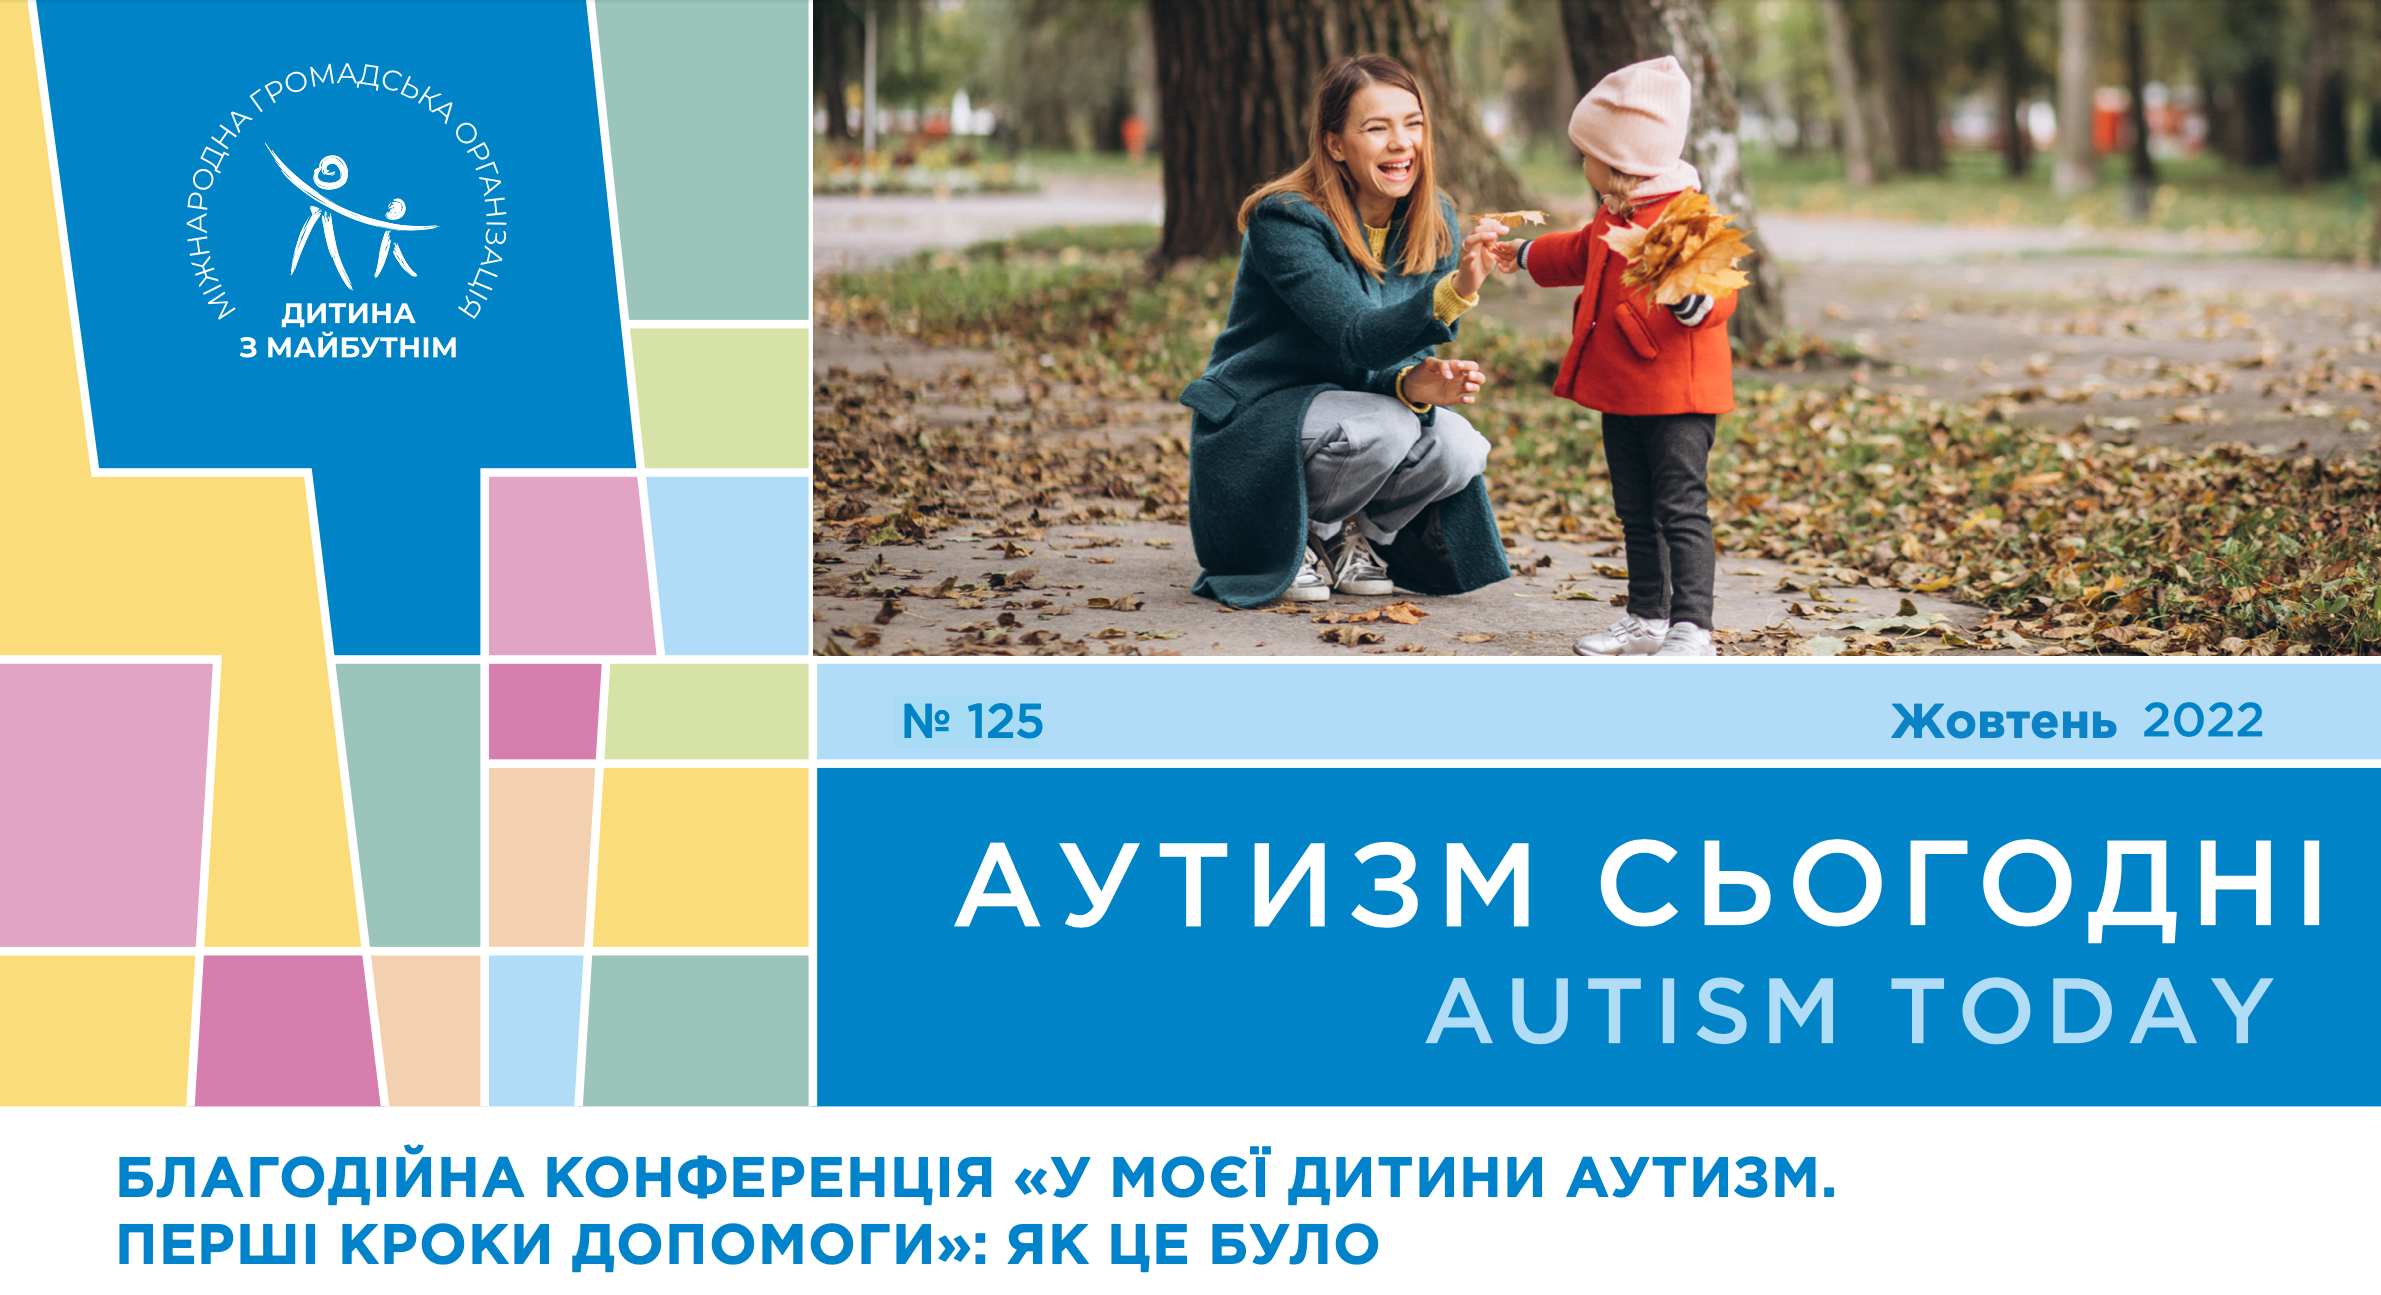 Открытие Украиной Международного конгресса “Аутизм Европа”, благотворительная конференция “У моего ребенка аутизм. Первые шаги помощи” и поэма об ужасе войны подростка с аутизмом — на страницах октябрьского выпуска «Аутизм сегодня»